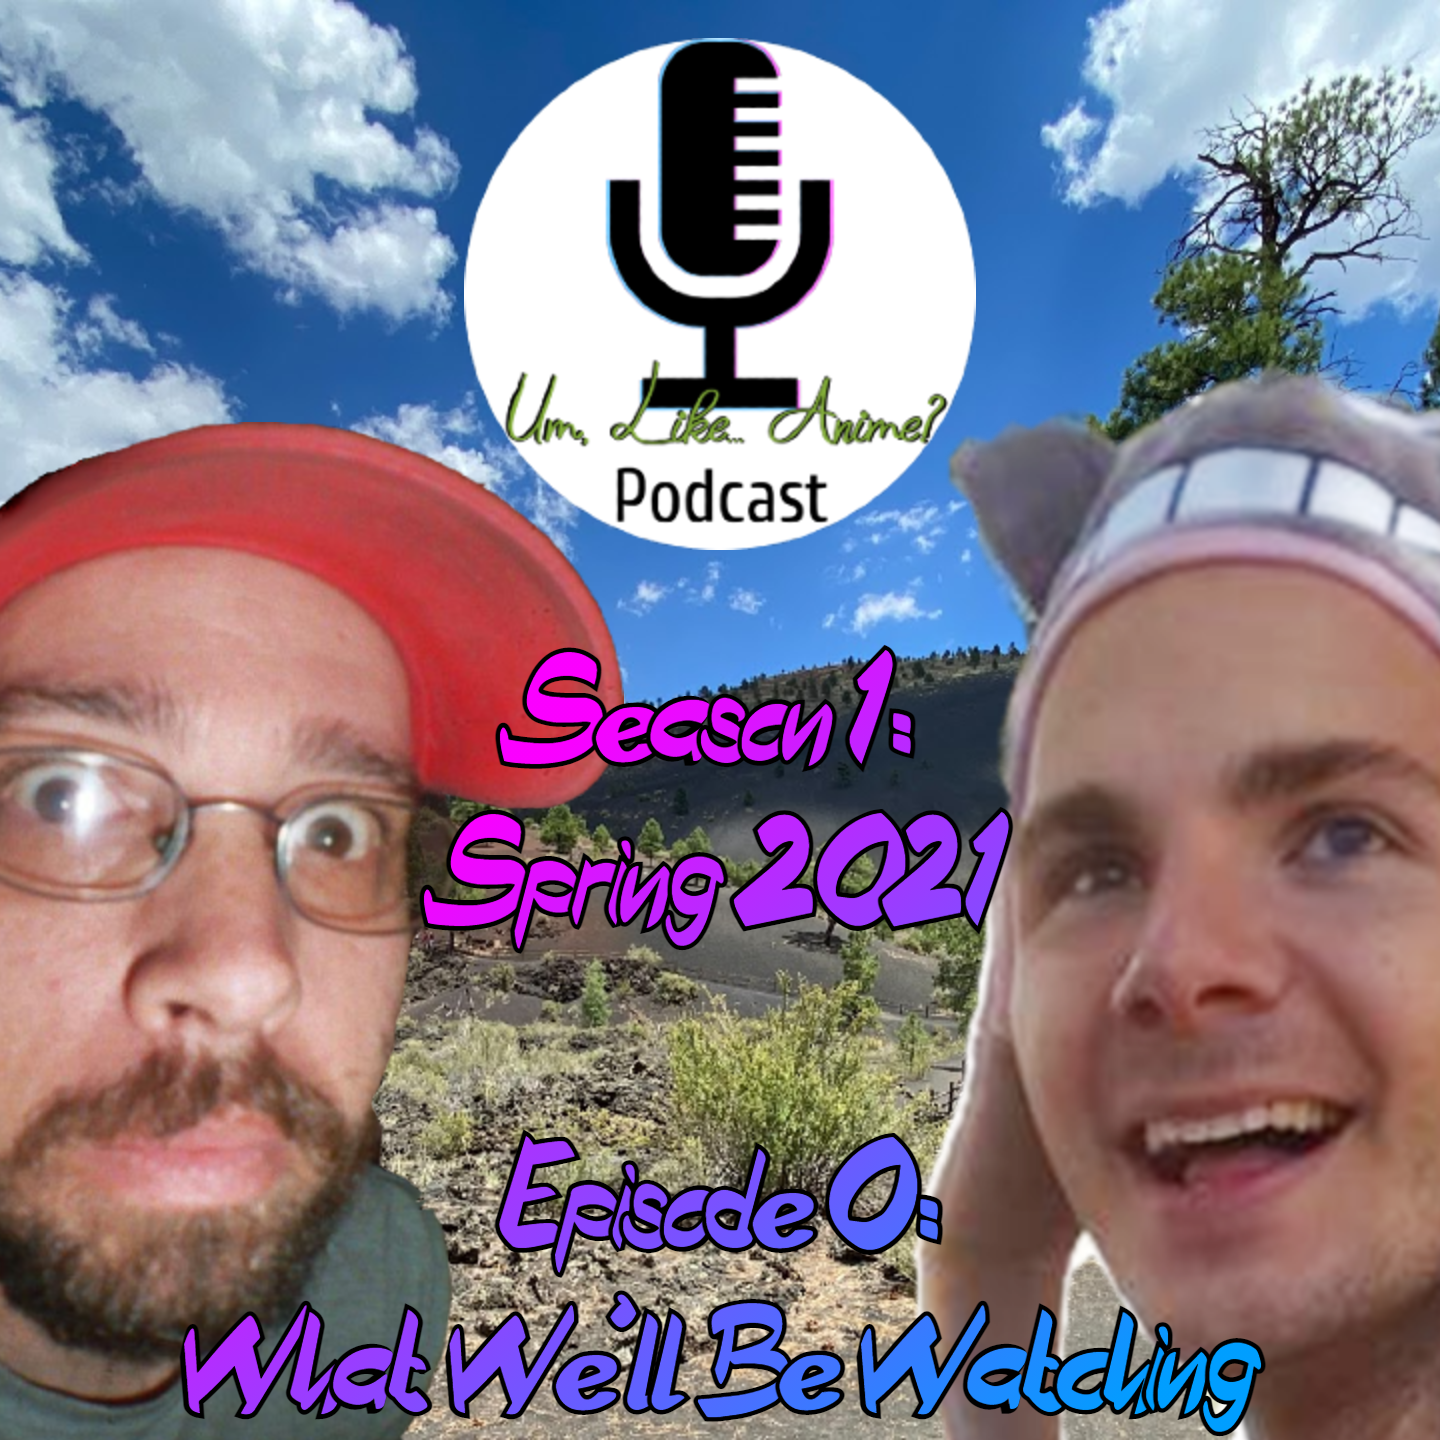 Season 1: Episode 0: What We’ll Be Watching – Spring 2021